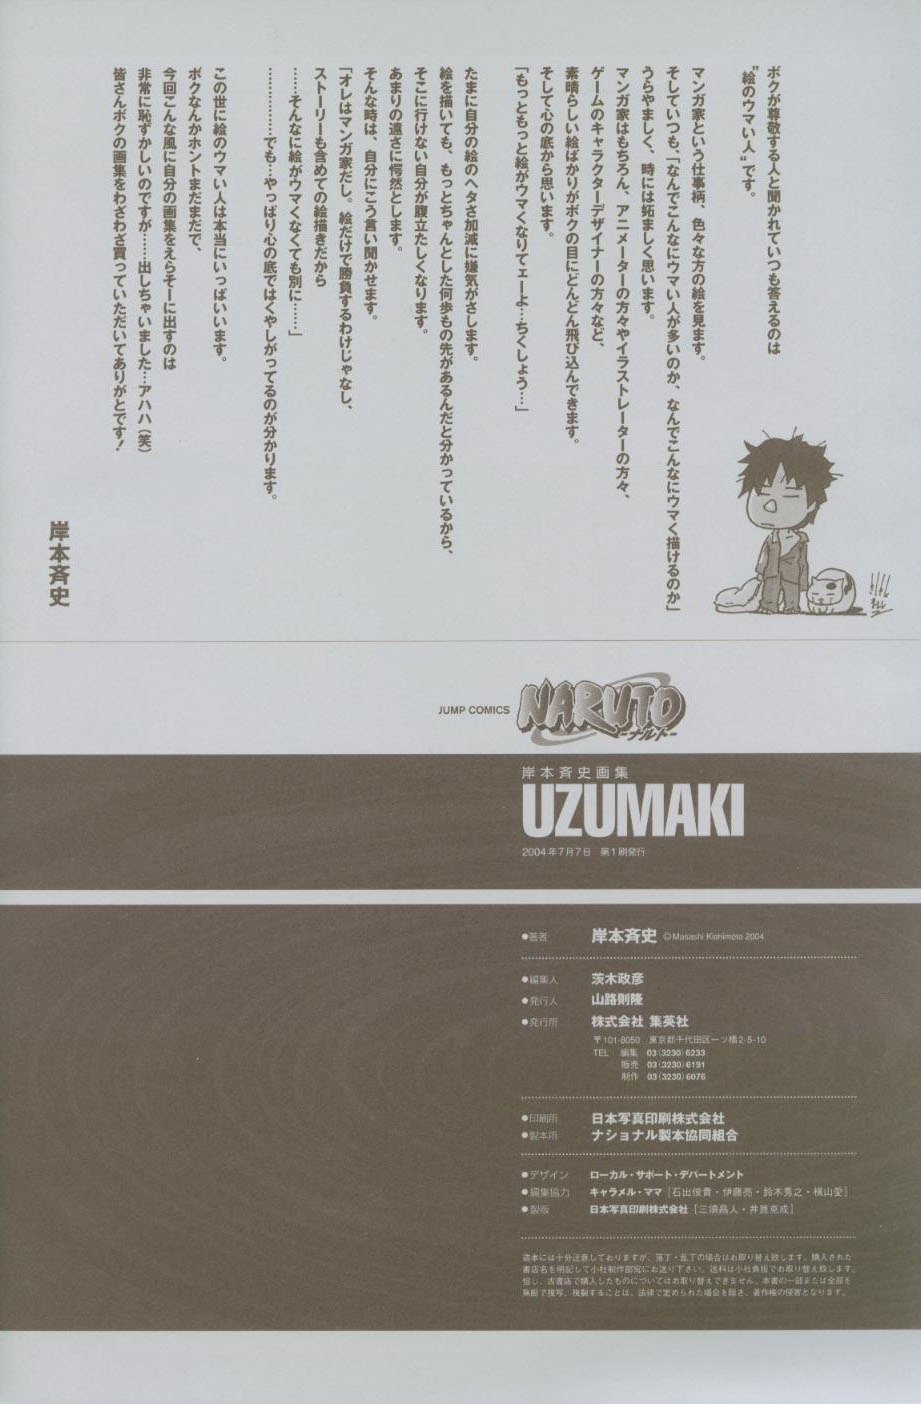 Манга Аниме "Наруто" - артбук "Узумаки" - Глава 1 Страница 137